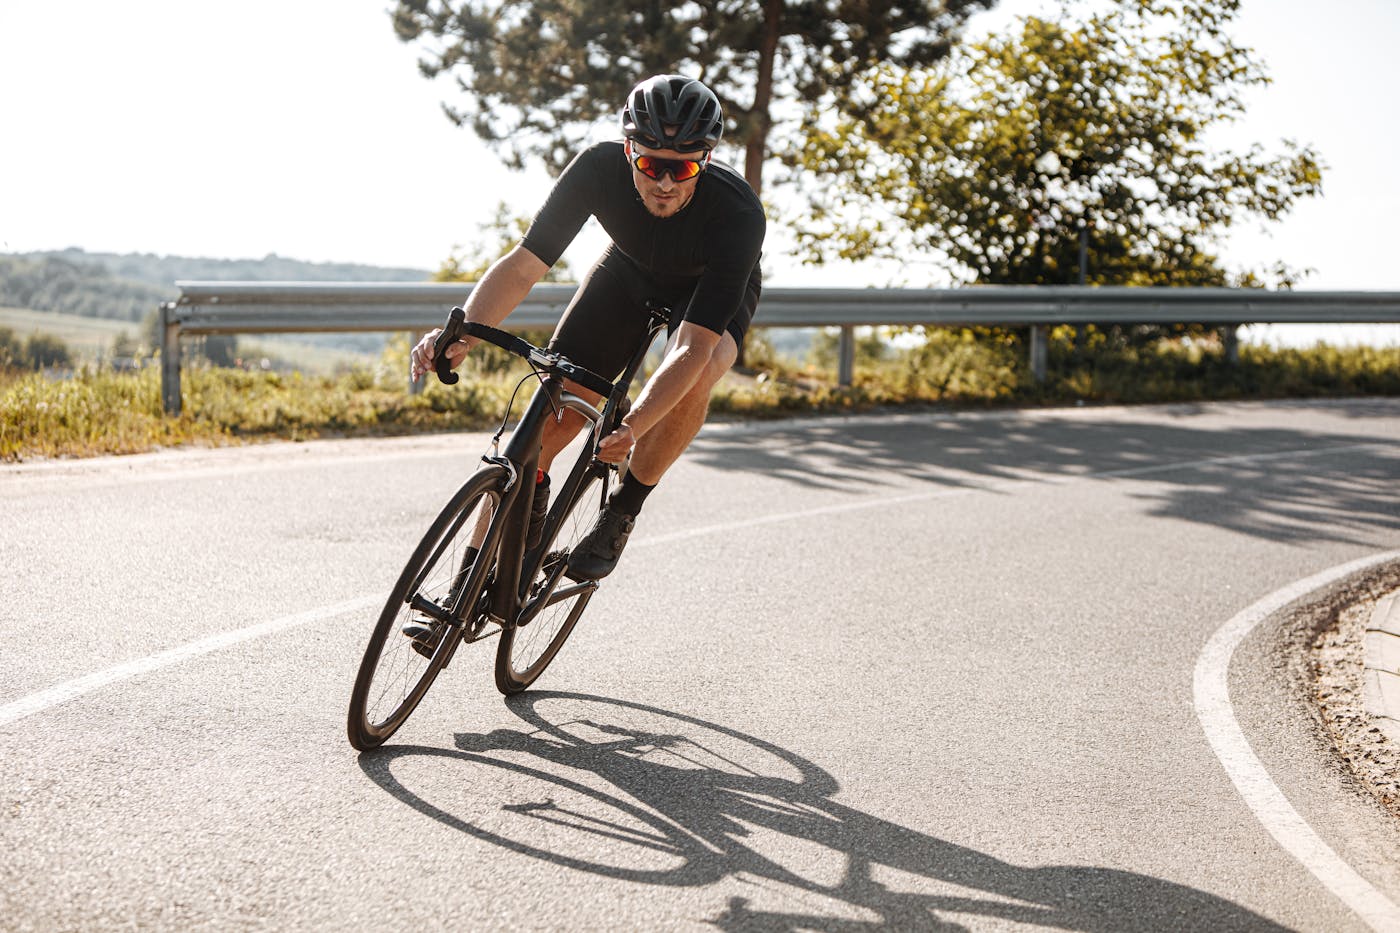 Bärtiger Radfahrer in Sportkleidung fährt mit einem schwarzen Fahrrad